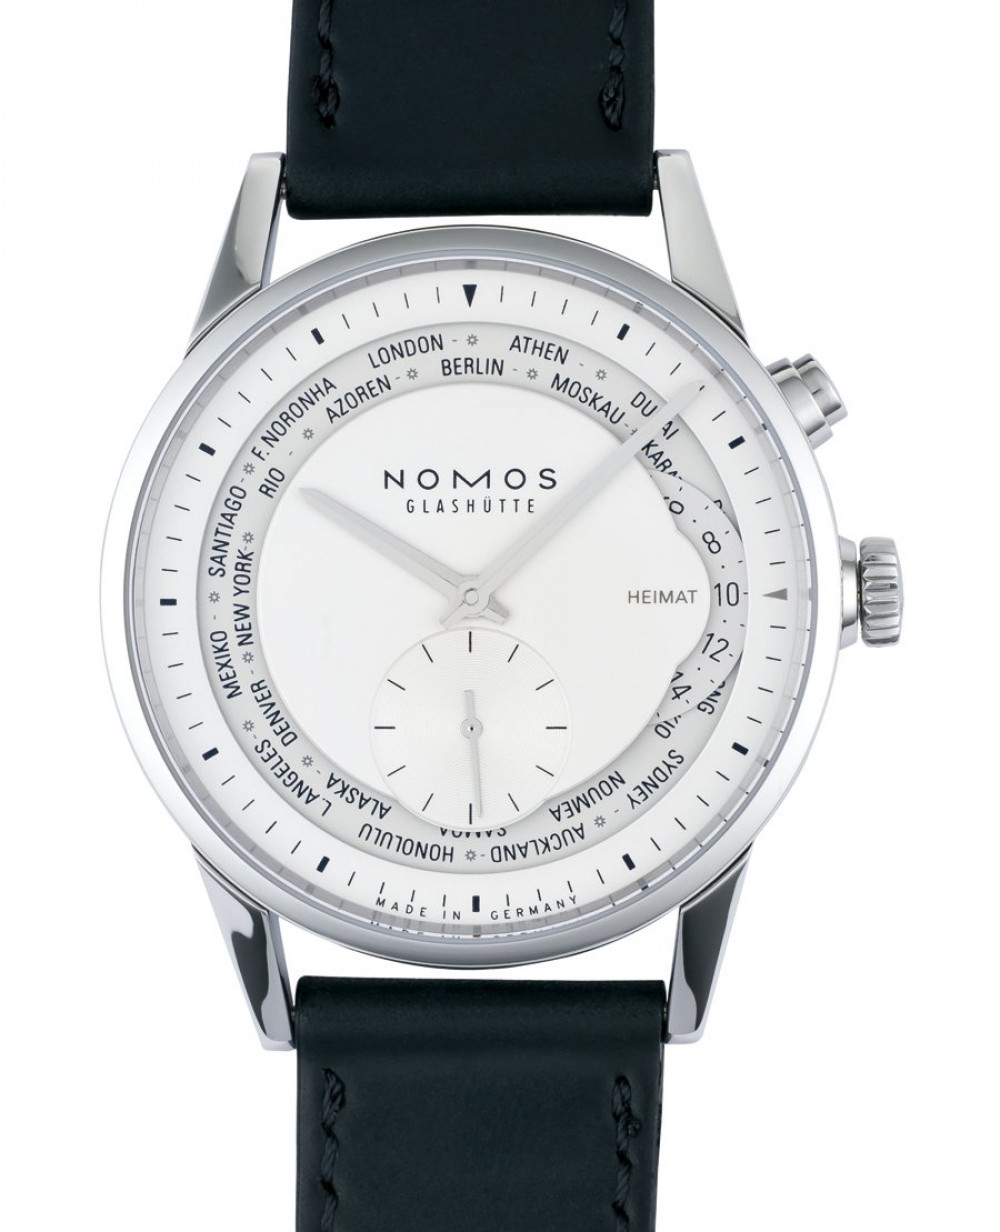 Zegarek firmy Nomos Glashütte, model Zürich Weltzeit S